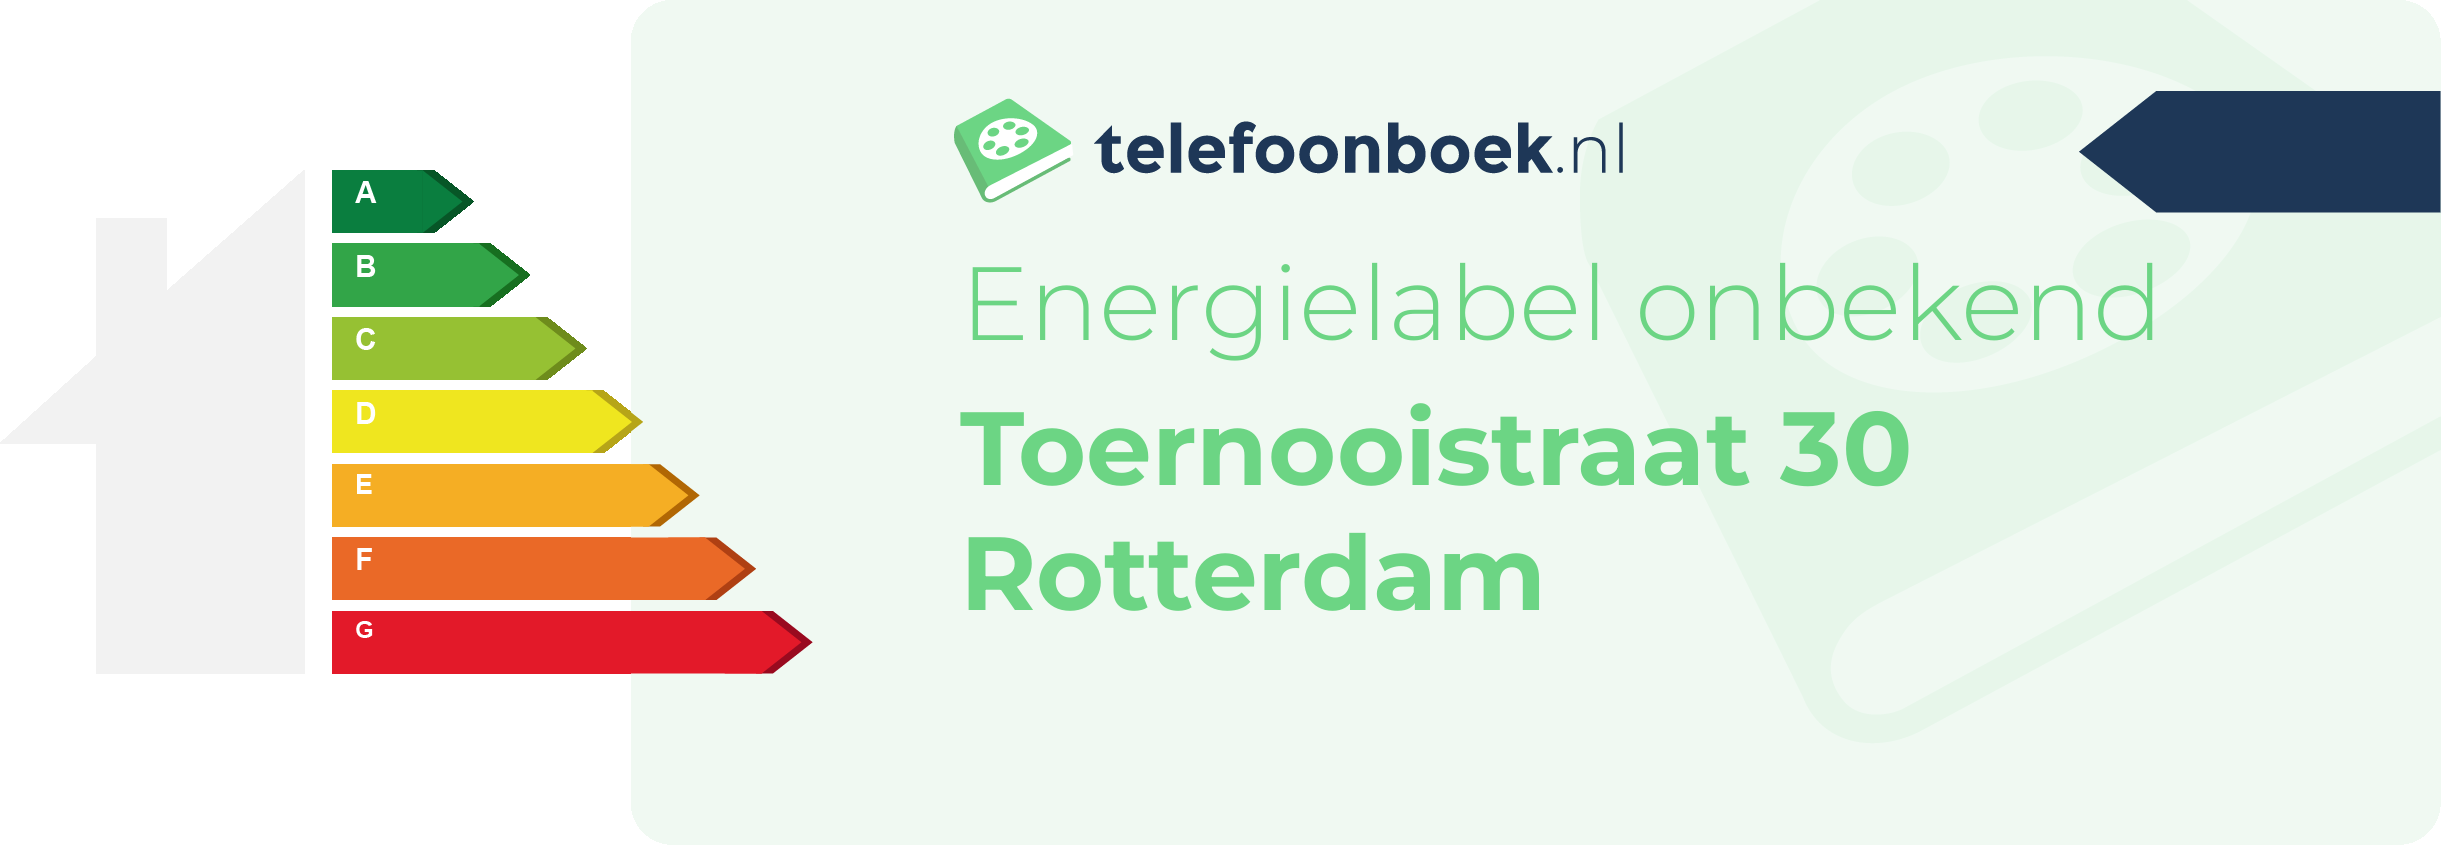 Energielabel Toernooistraat 30 Rotterdam